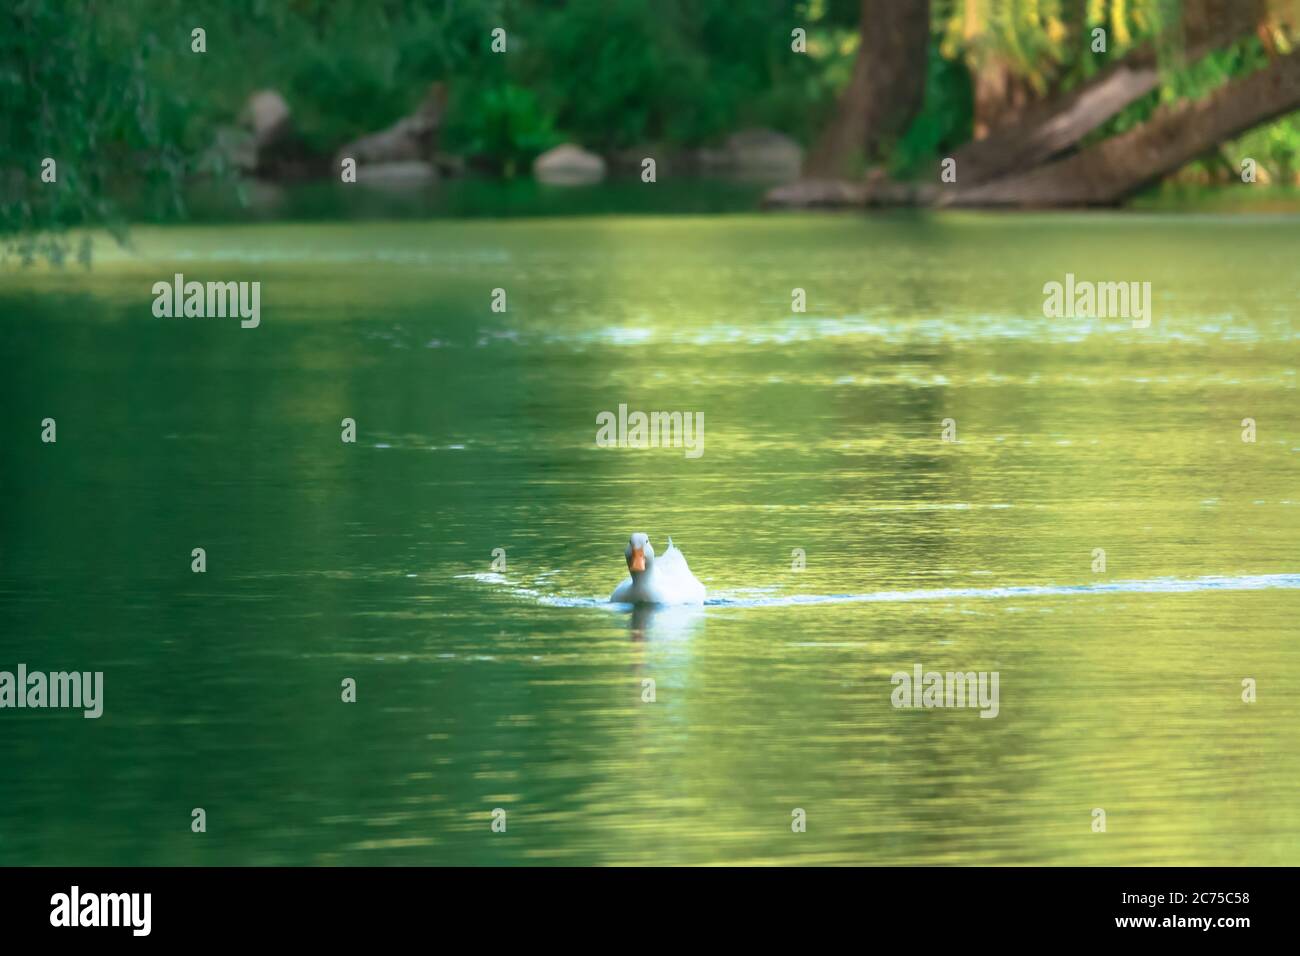 Magnifique paysage naturel en été avec des arbres verts autour du lac et un joli canard sauvage. Banque D'Images